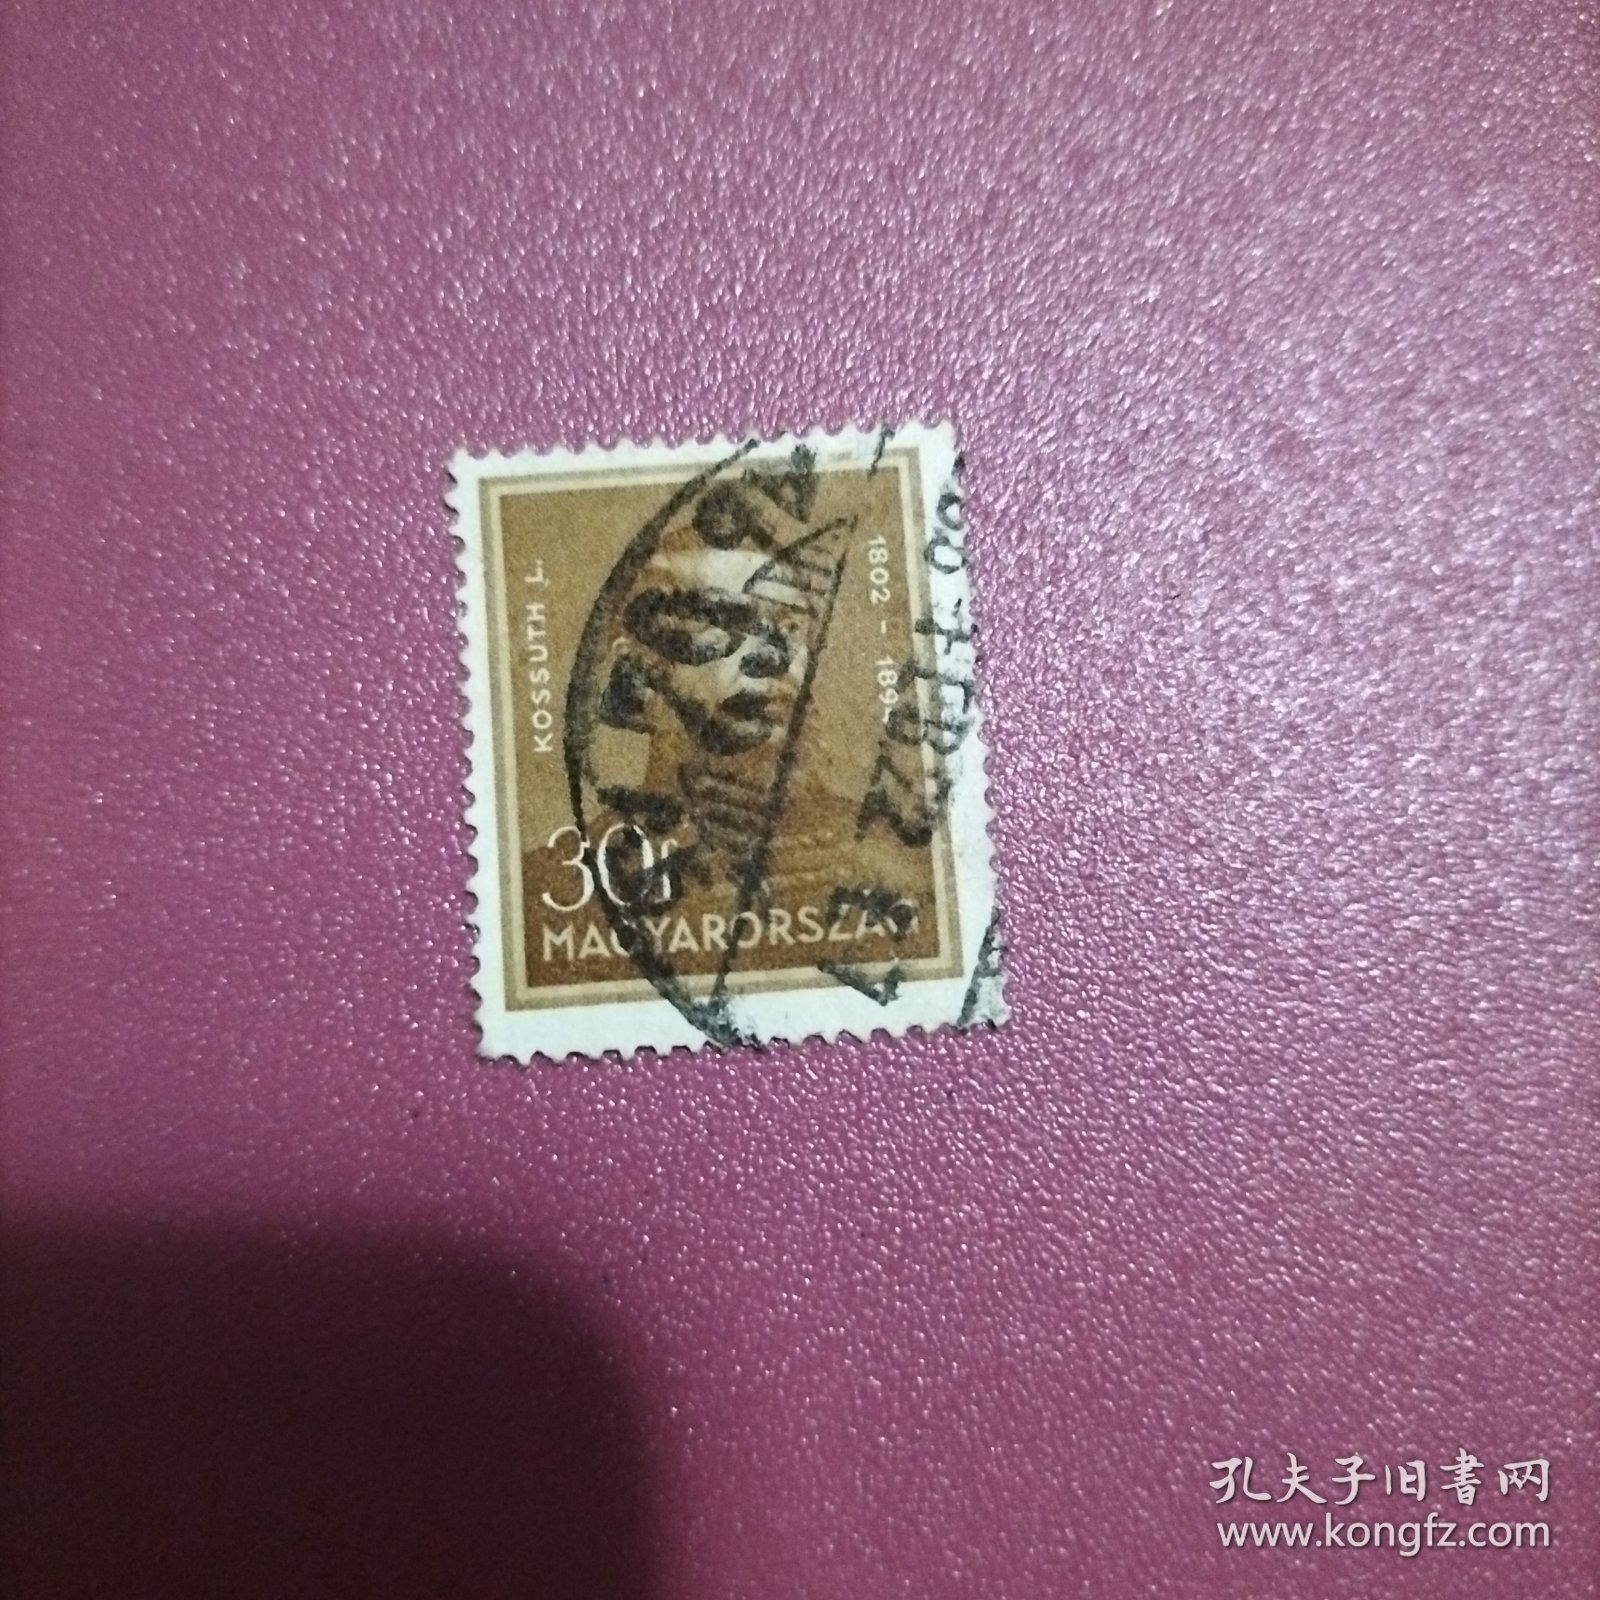 匈牙利信销邮票 人物 面值30f（库存 1 )